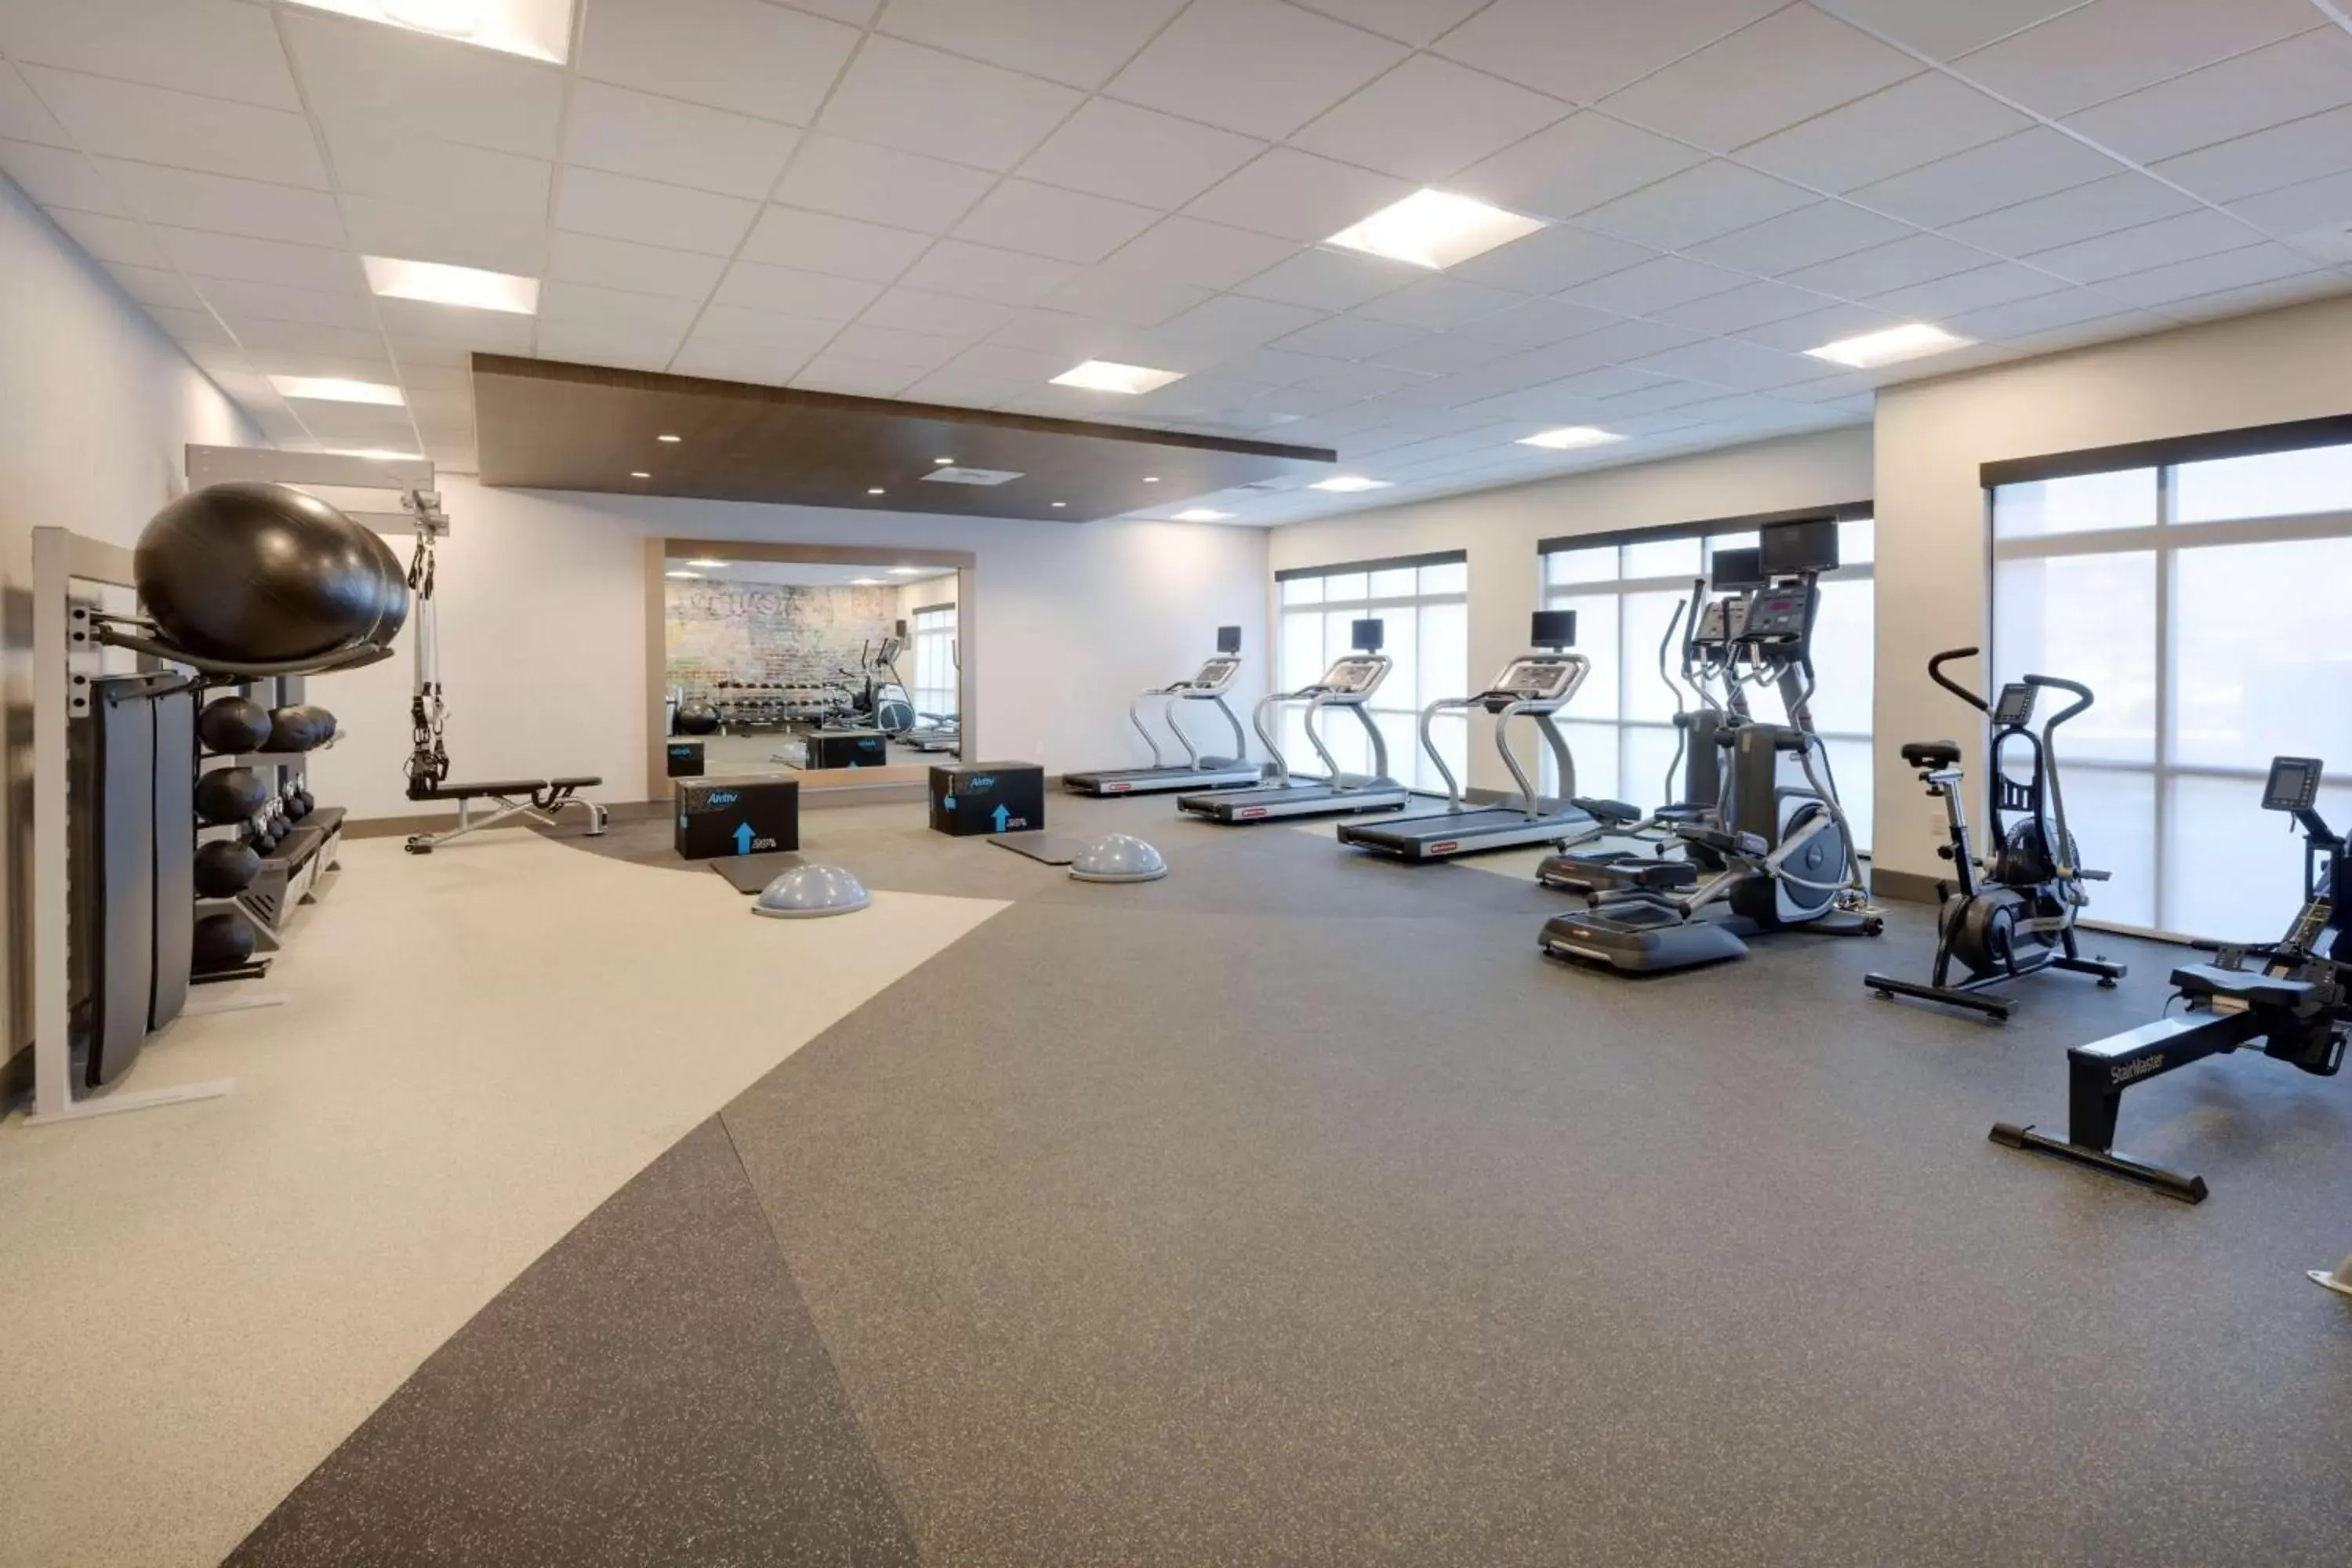 Fitness centre/facilities, Fitness Center/Facilities in Hilton Garden Inn Haymarket